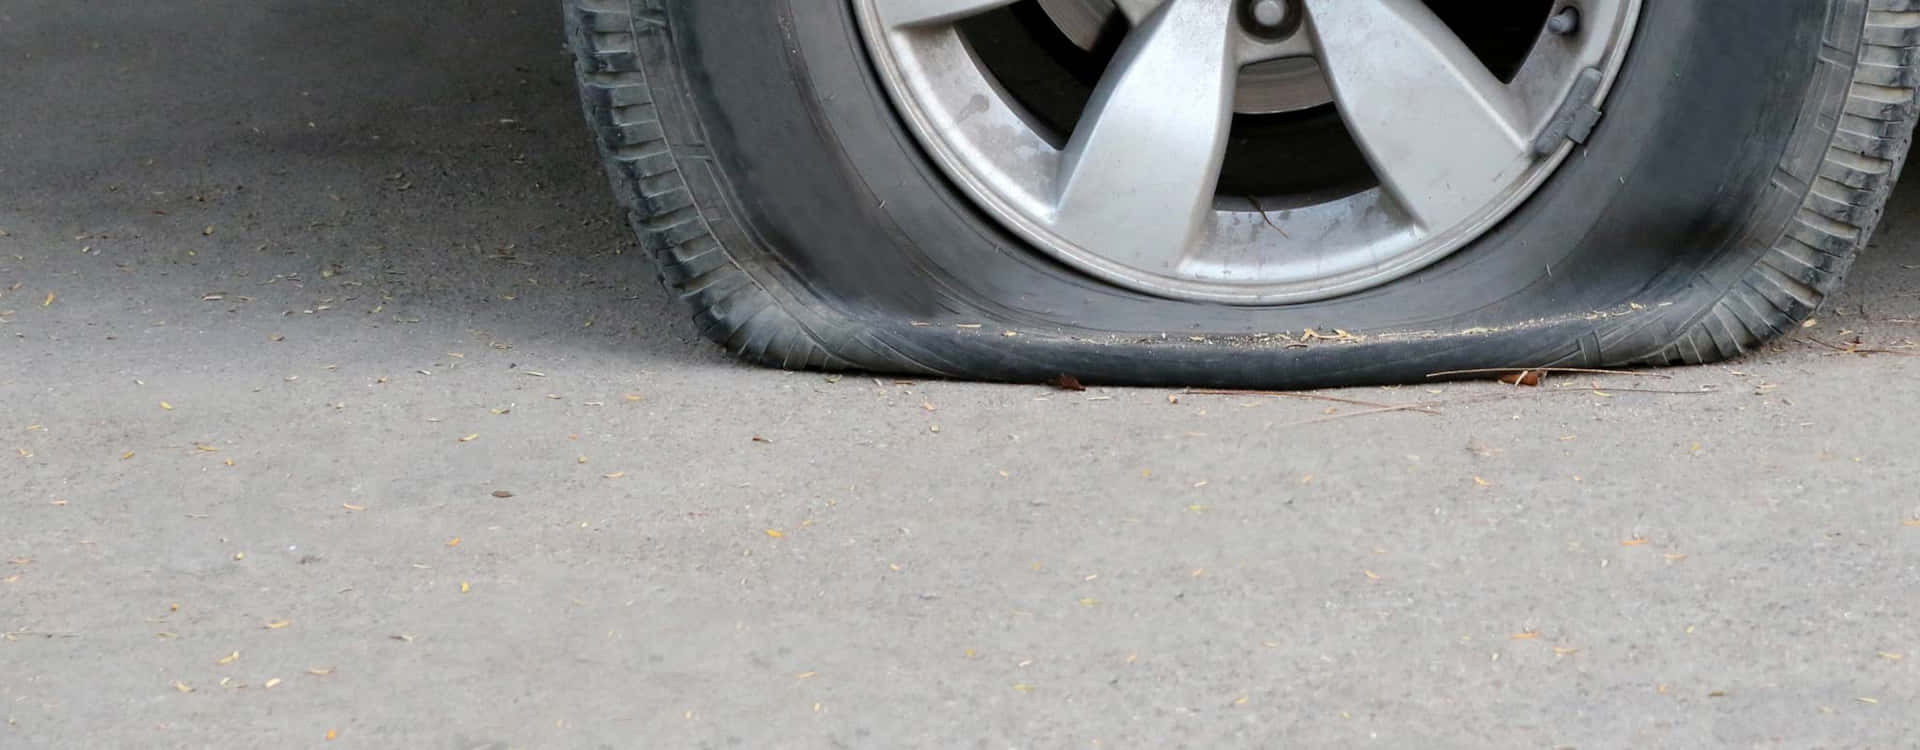 Ændring af en punkteret dæk kan være en udfordring.